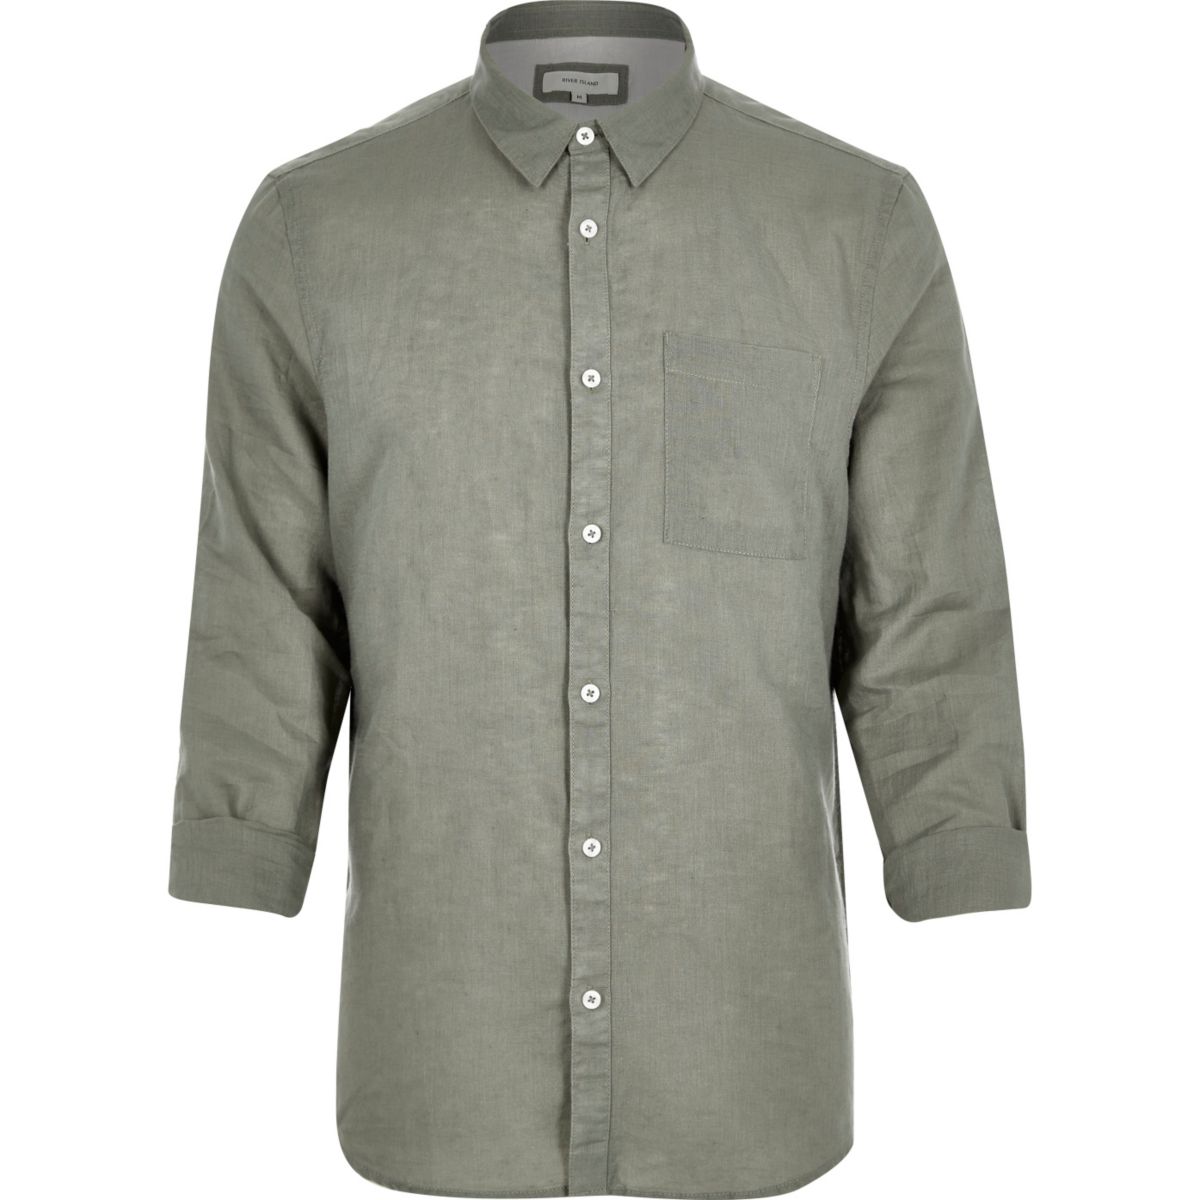 Green linen-rich shirt - Shirts - Sale - men